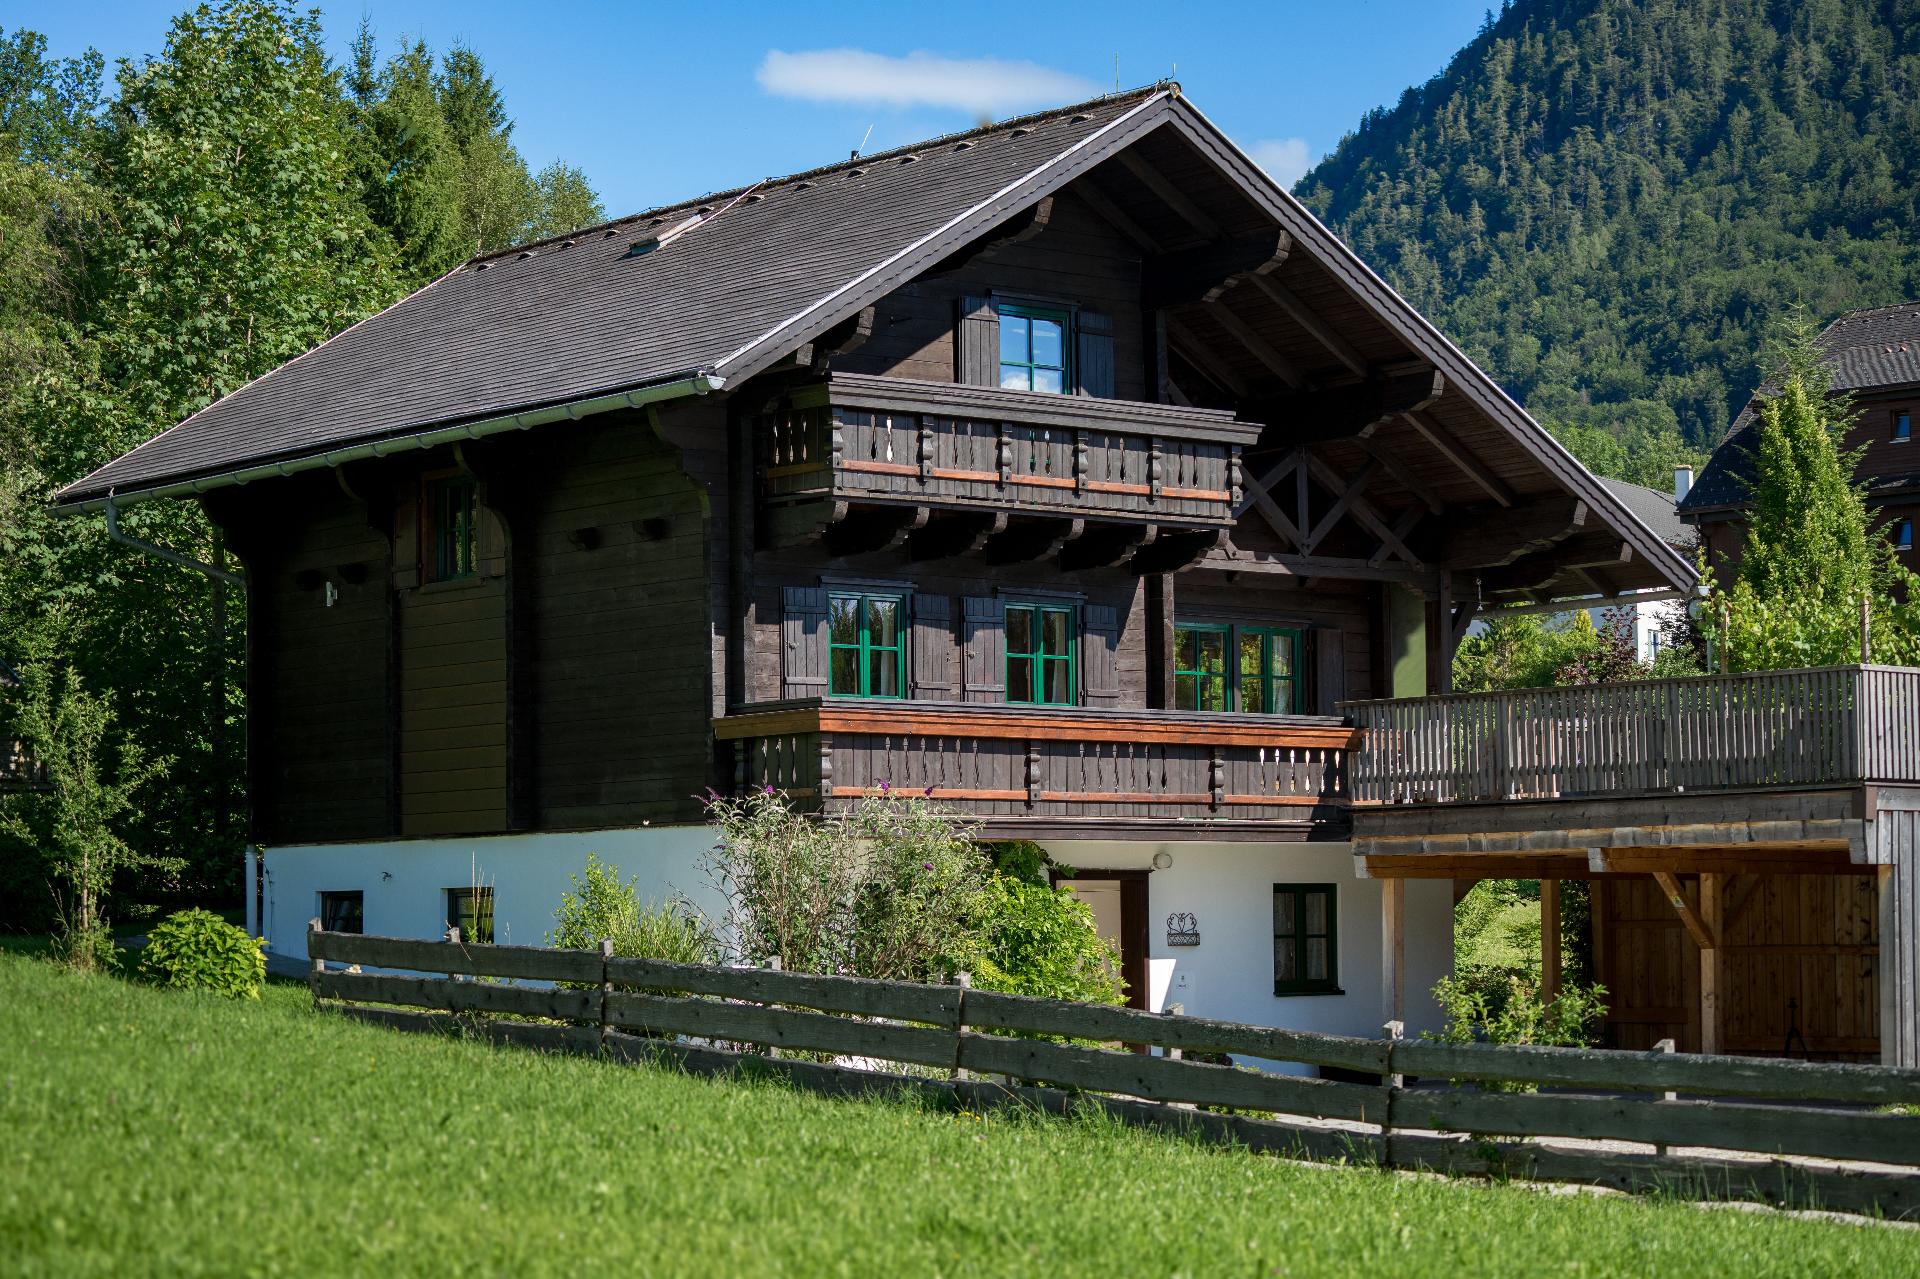 Ausseer Chalet, nahe Hallstatt, Steierisches Salzk Ferienhaus in Österreich